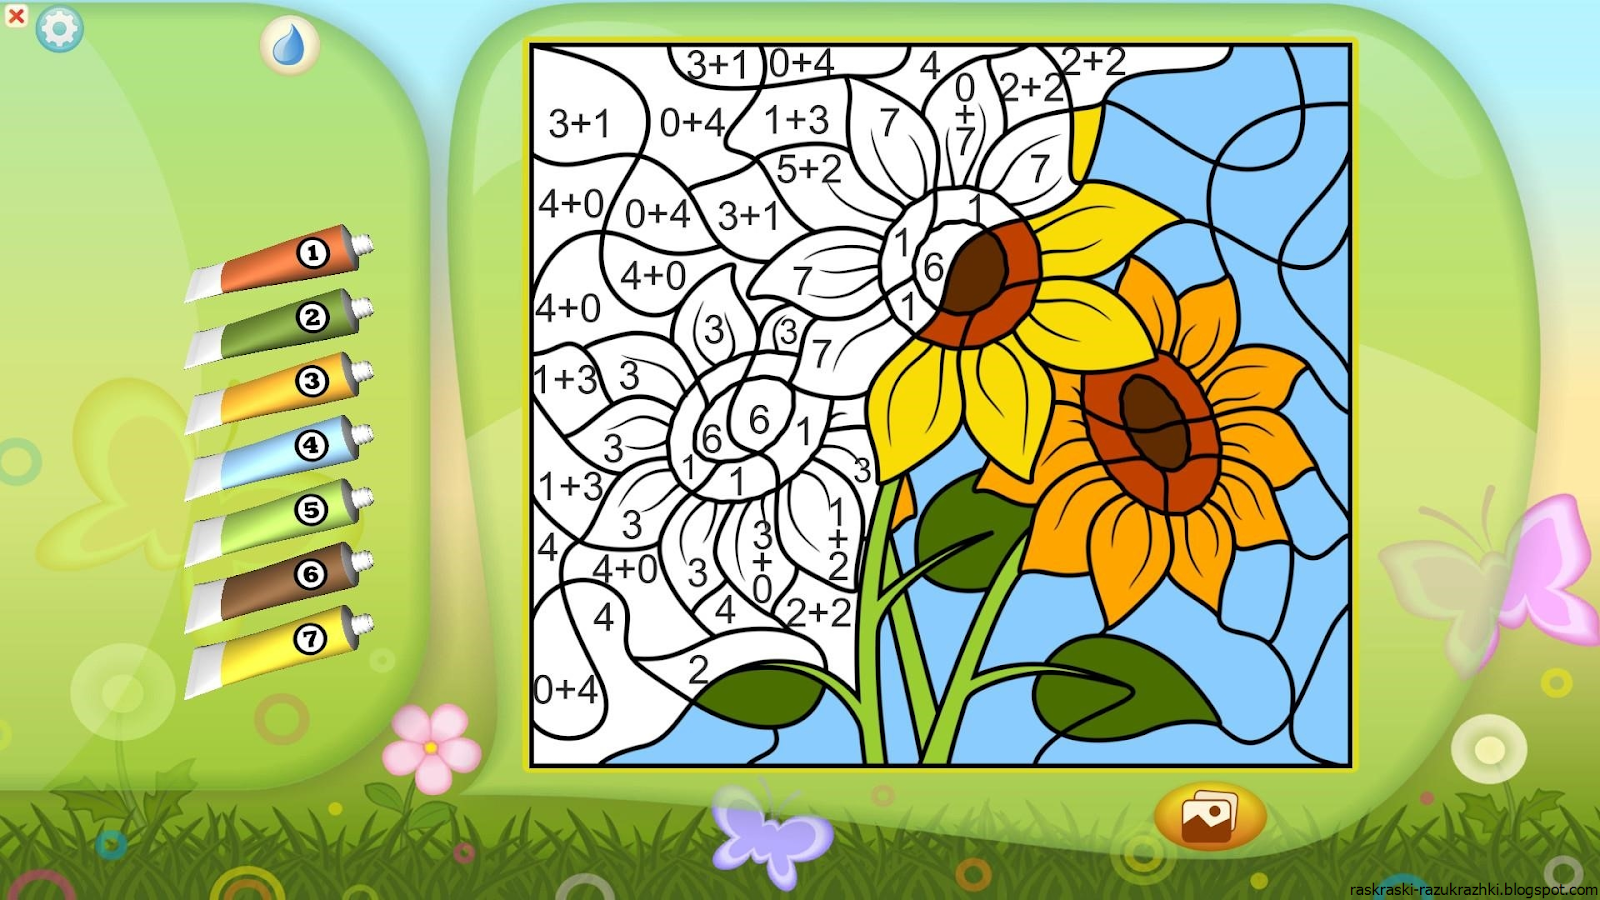 Игра разрисовывать. Раскраски. Игры. Рисование по номерам для детей. Игры для детей: раскраски. Рисовалки для детей.